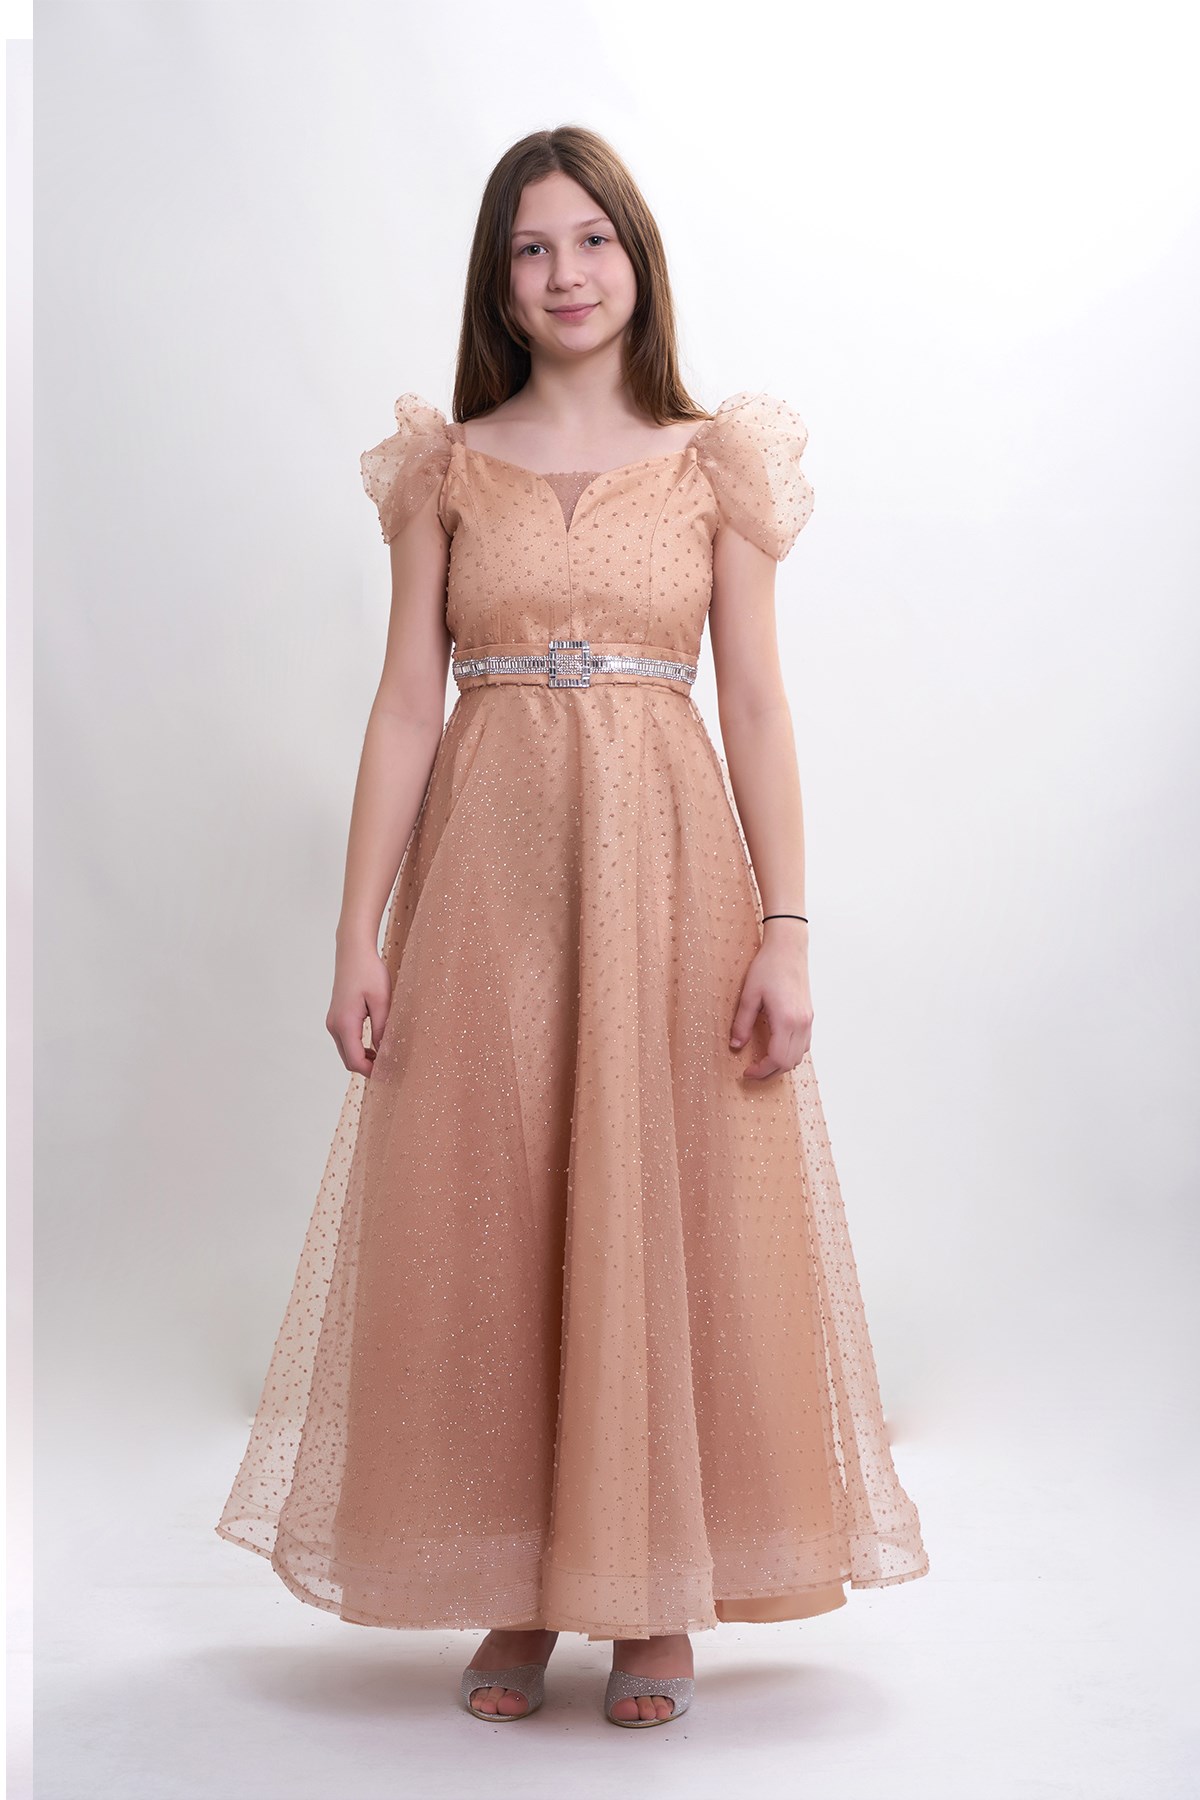 Yeni Tasarım Kız Çocuk/Genç Sim ve Tül Detaylı Abiye Elbise Mezuniyet/Düğün  5315 Renk Gold 10-14 Yaş